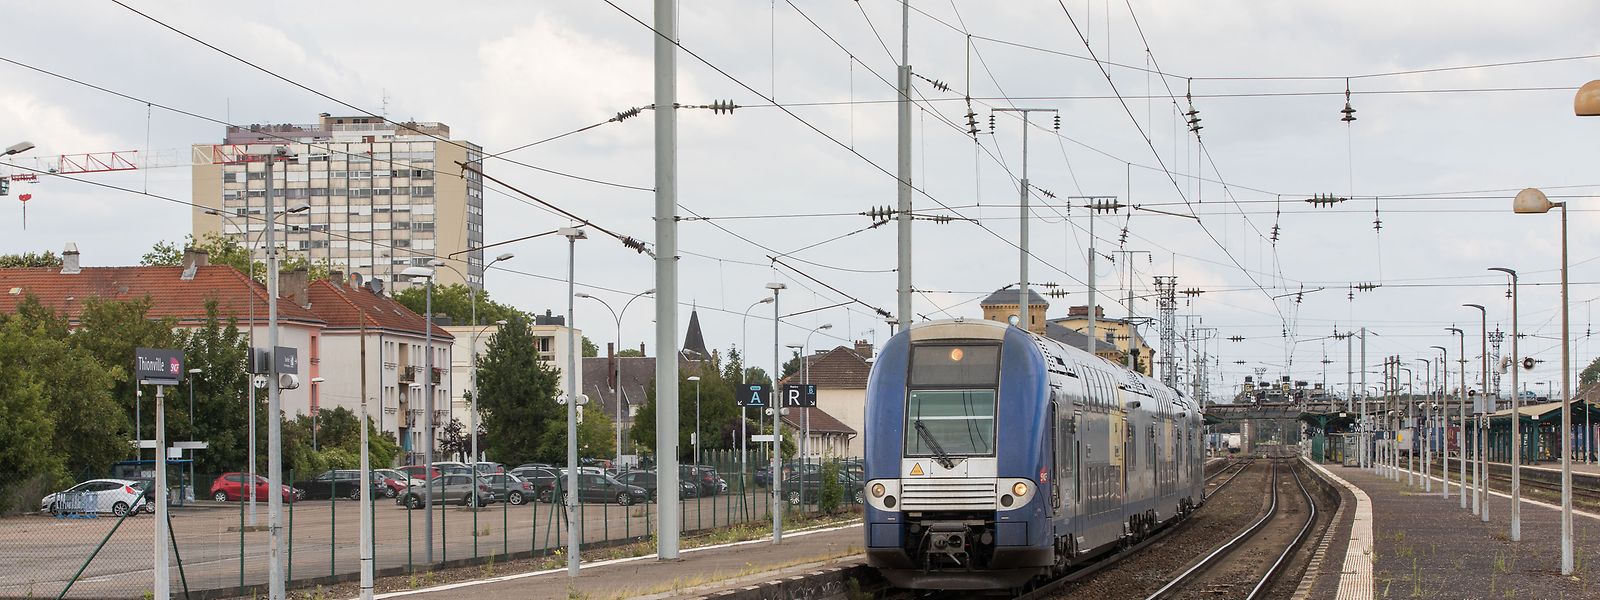 Pas moins de 28 trains ont été supprimés entièrement ou partiellement sur la ligne Metz - Luxembourg.